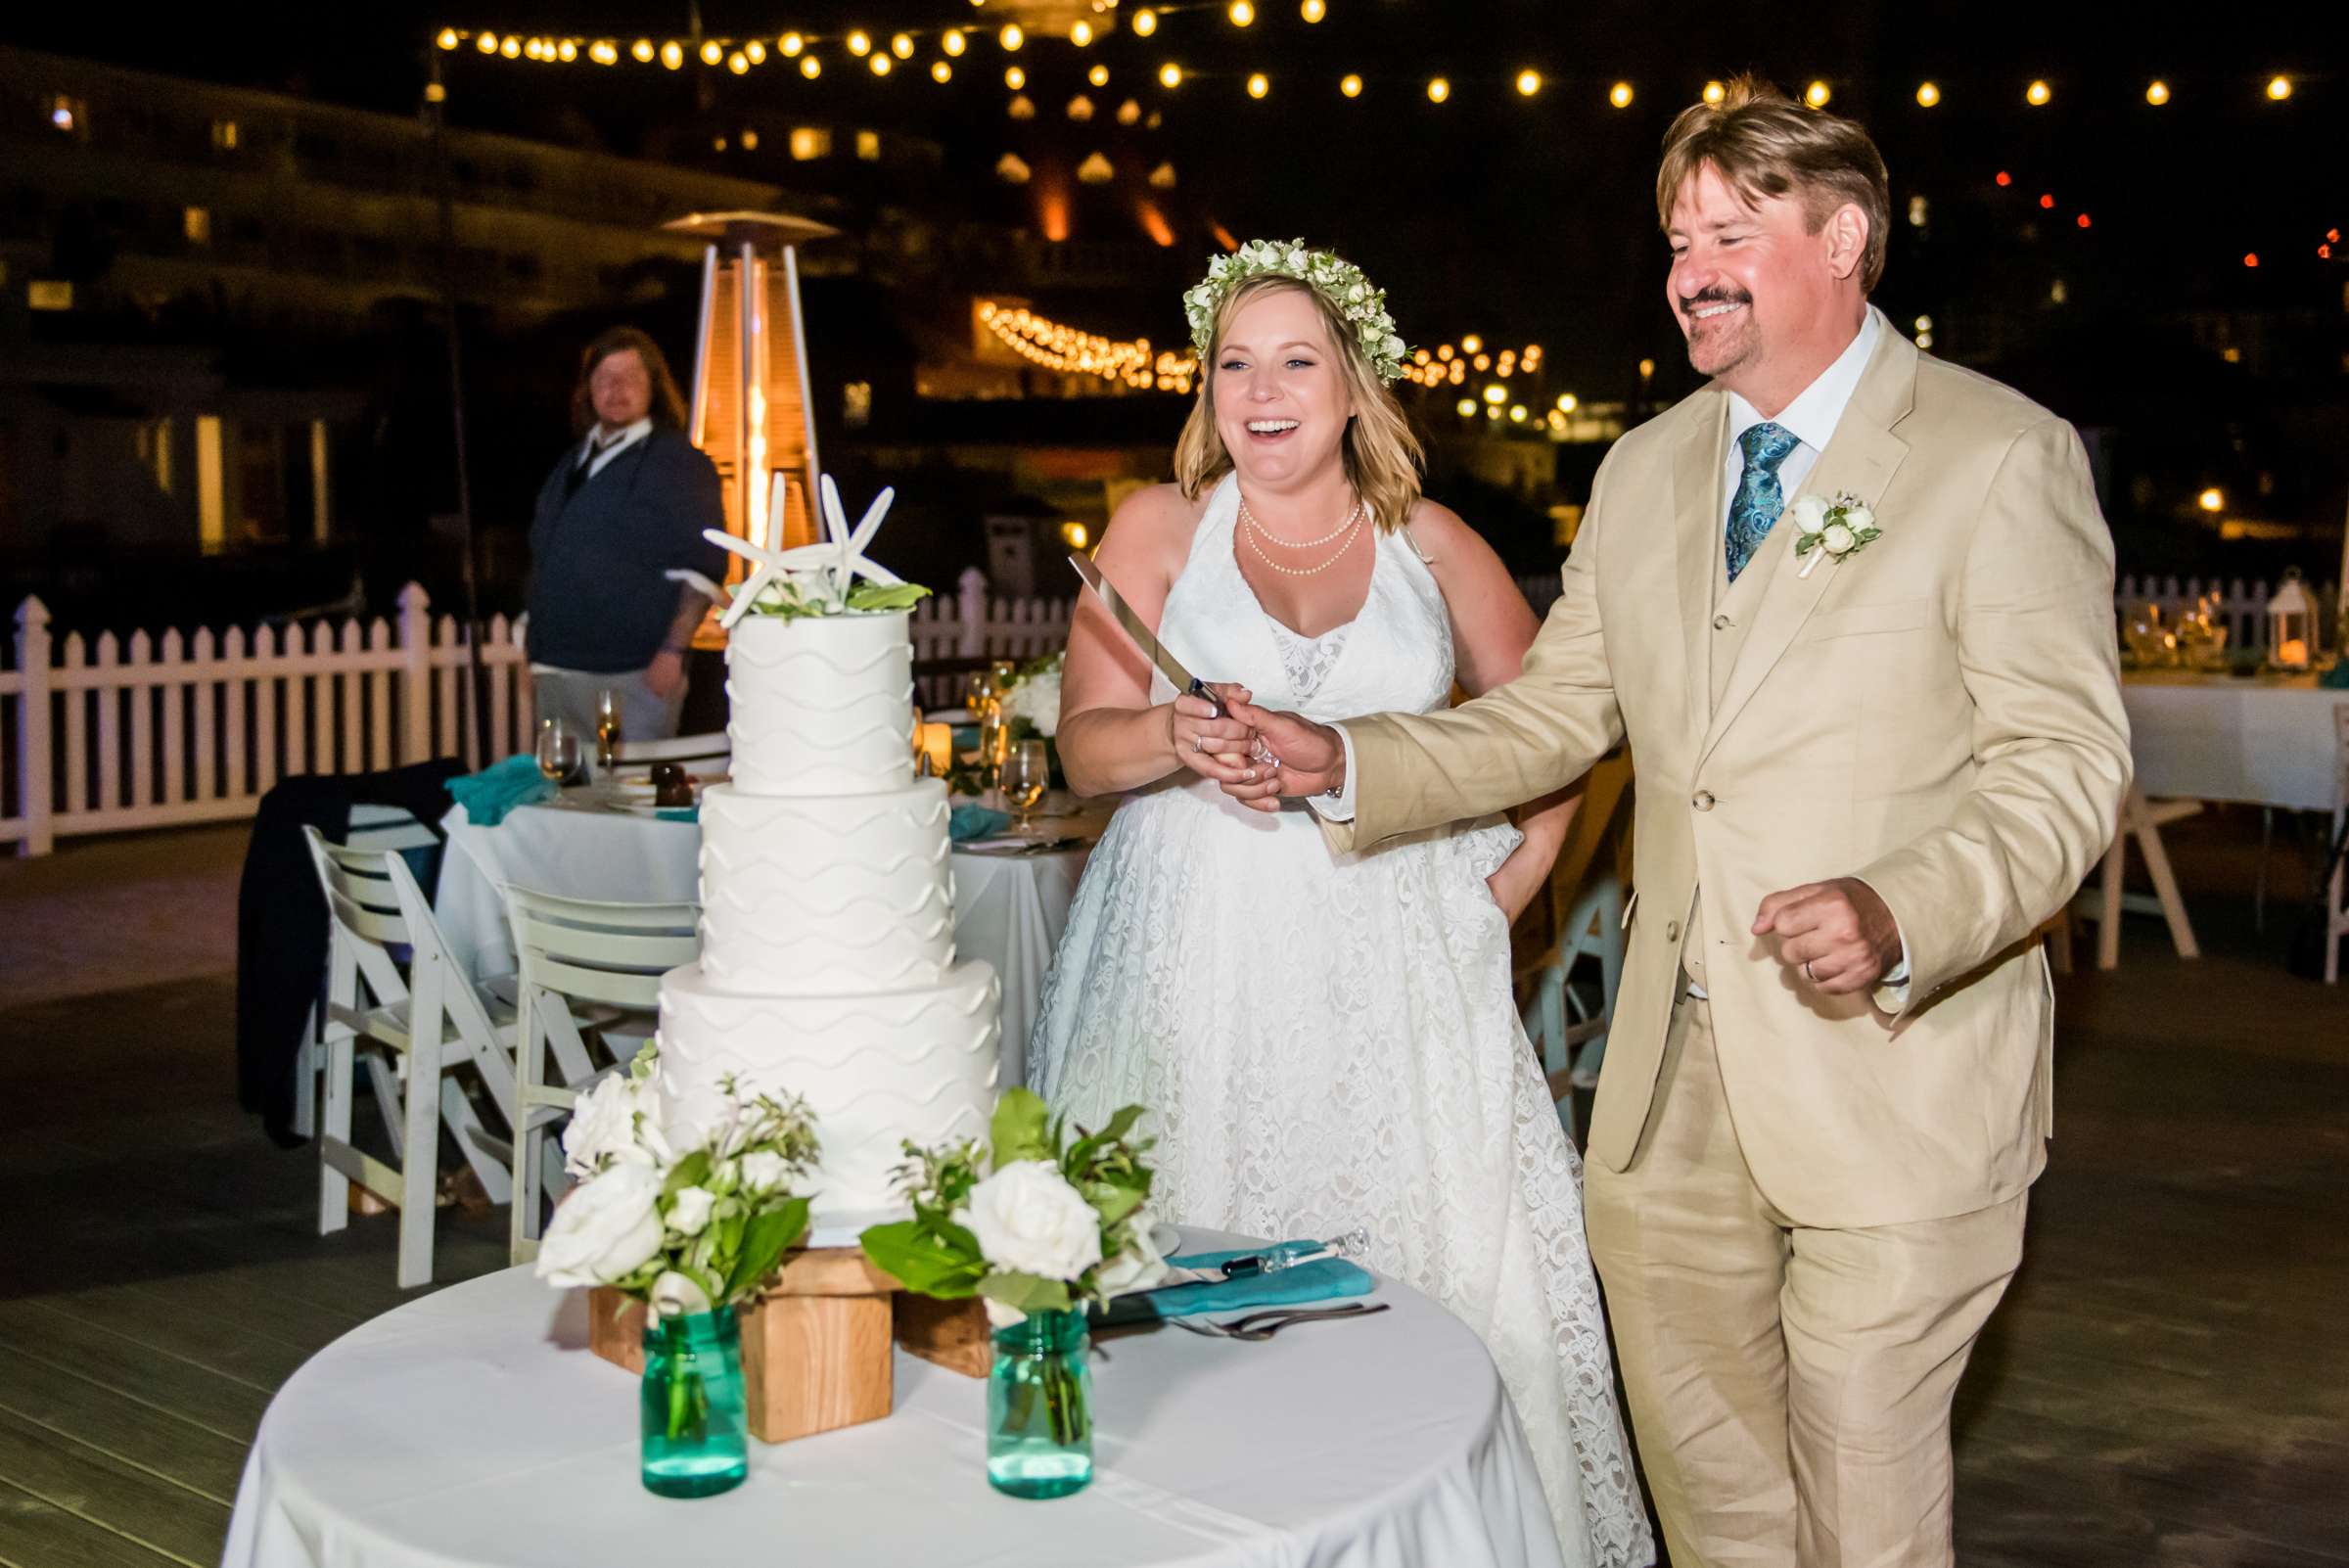 Hotel Del Coronado Wedding, Danielle and Glenn Wedding Photo #70 by True Photography